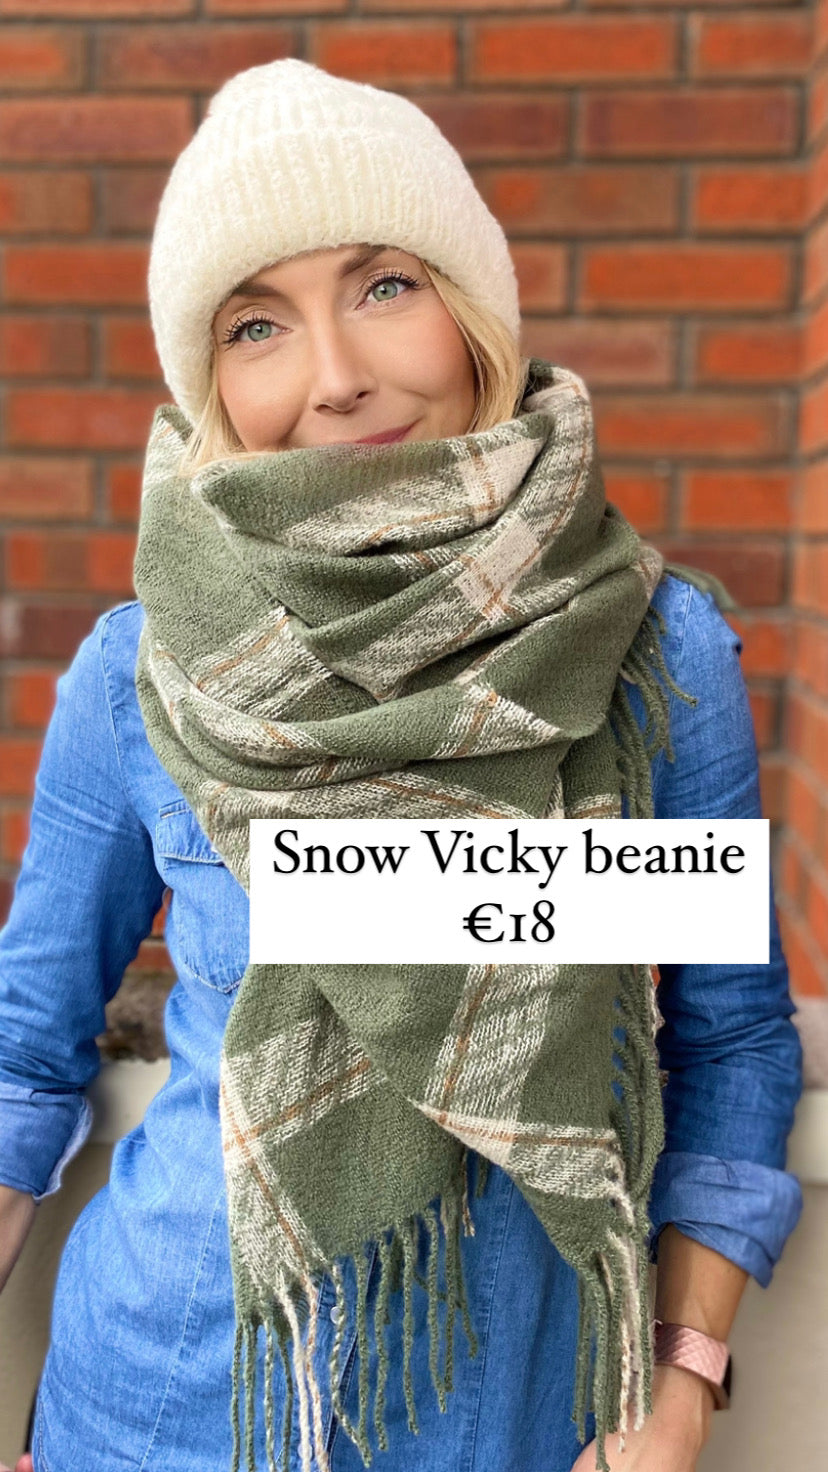 Snow Vicky beanie